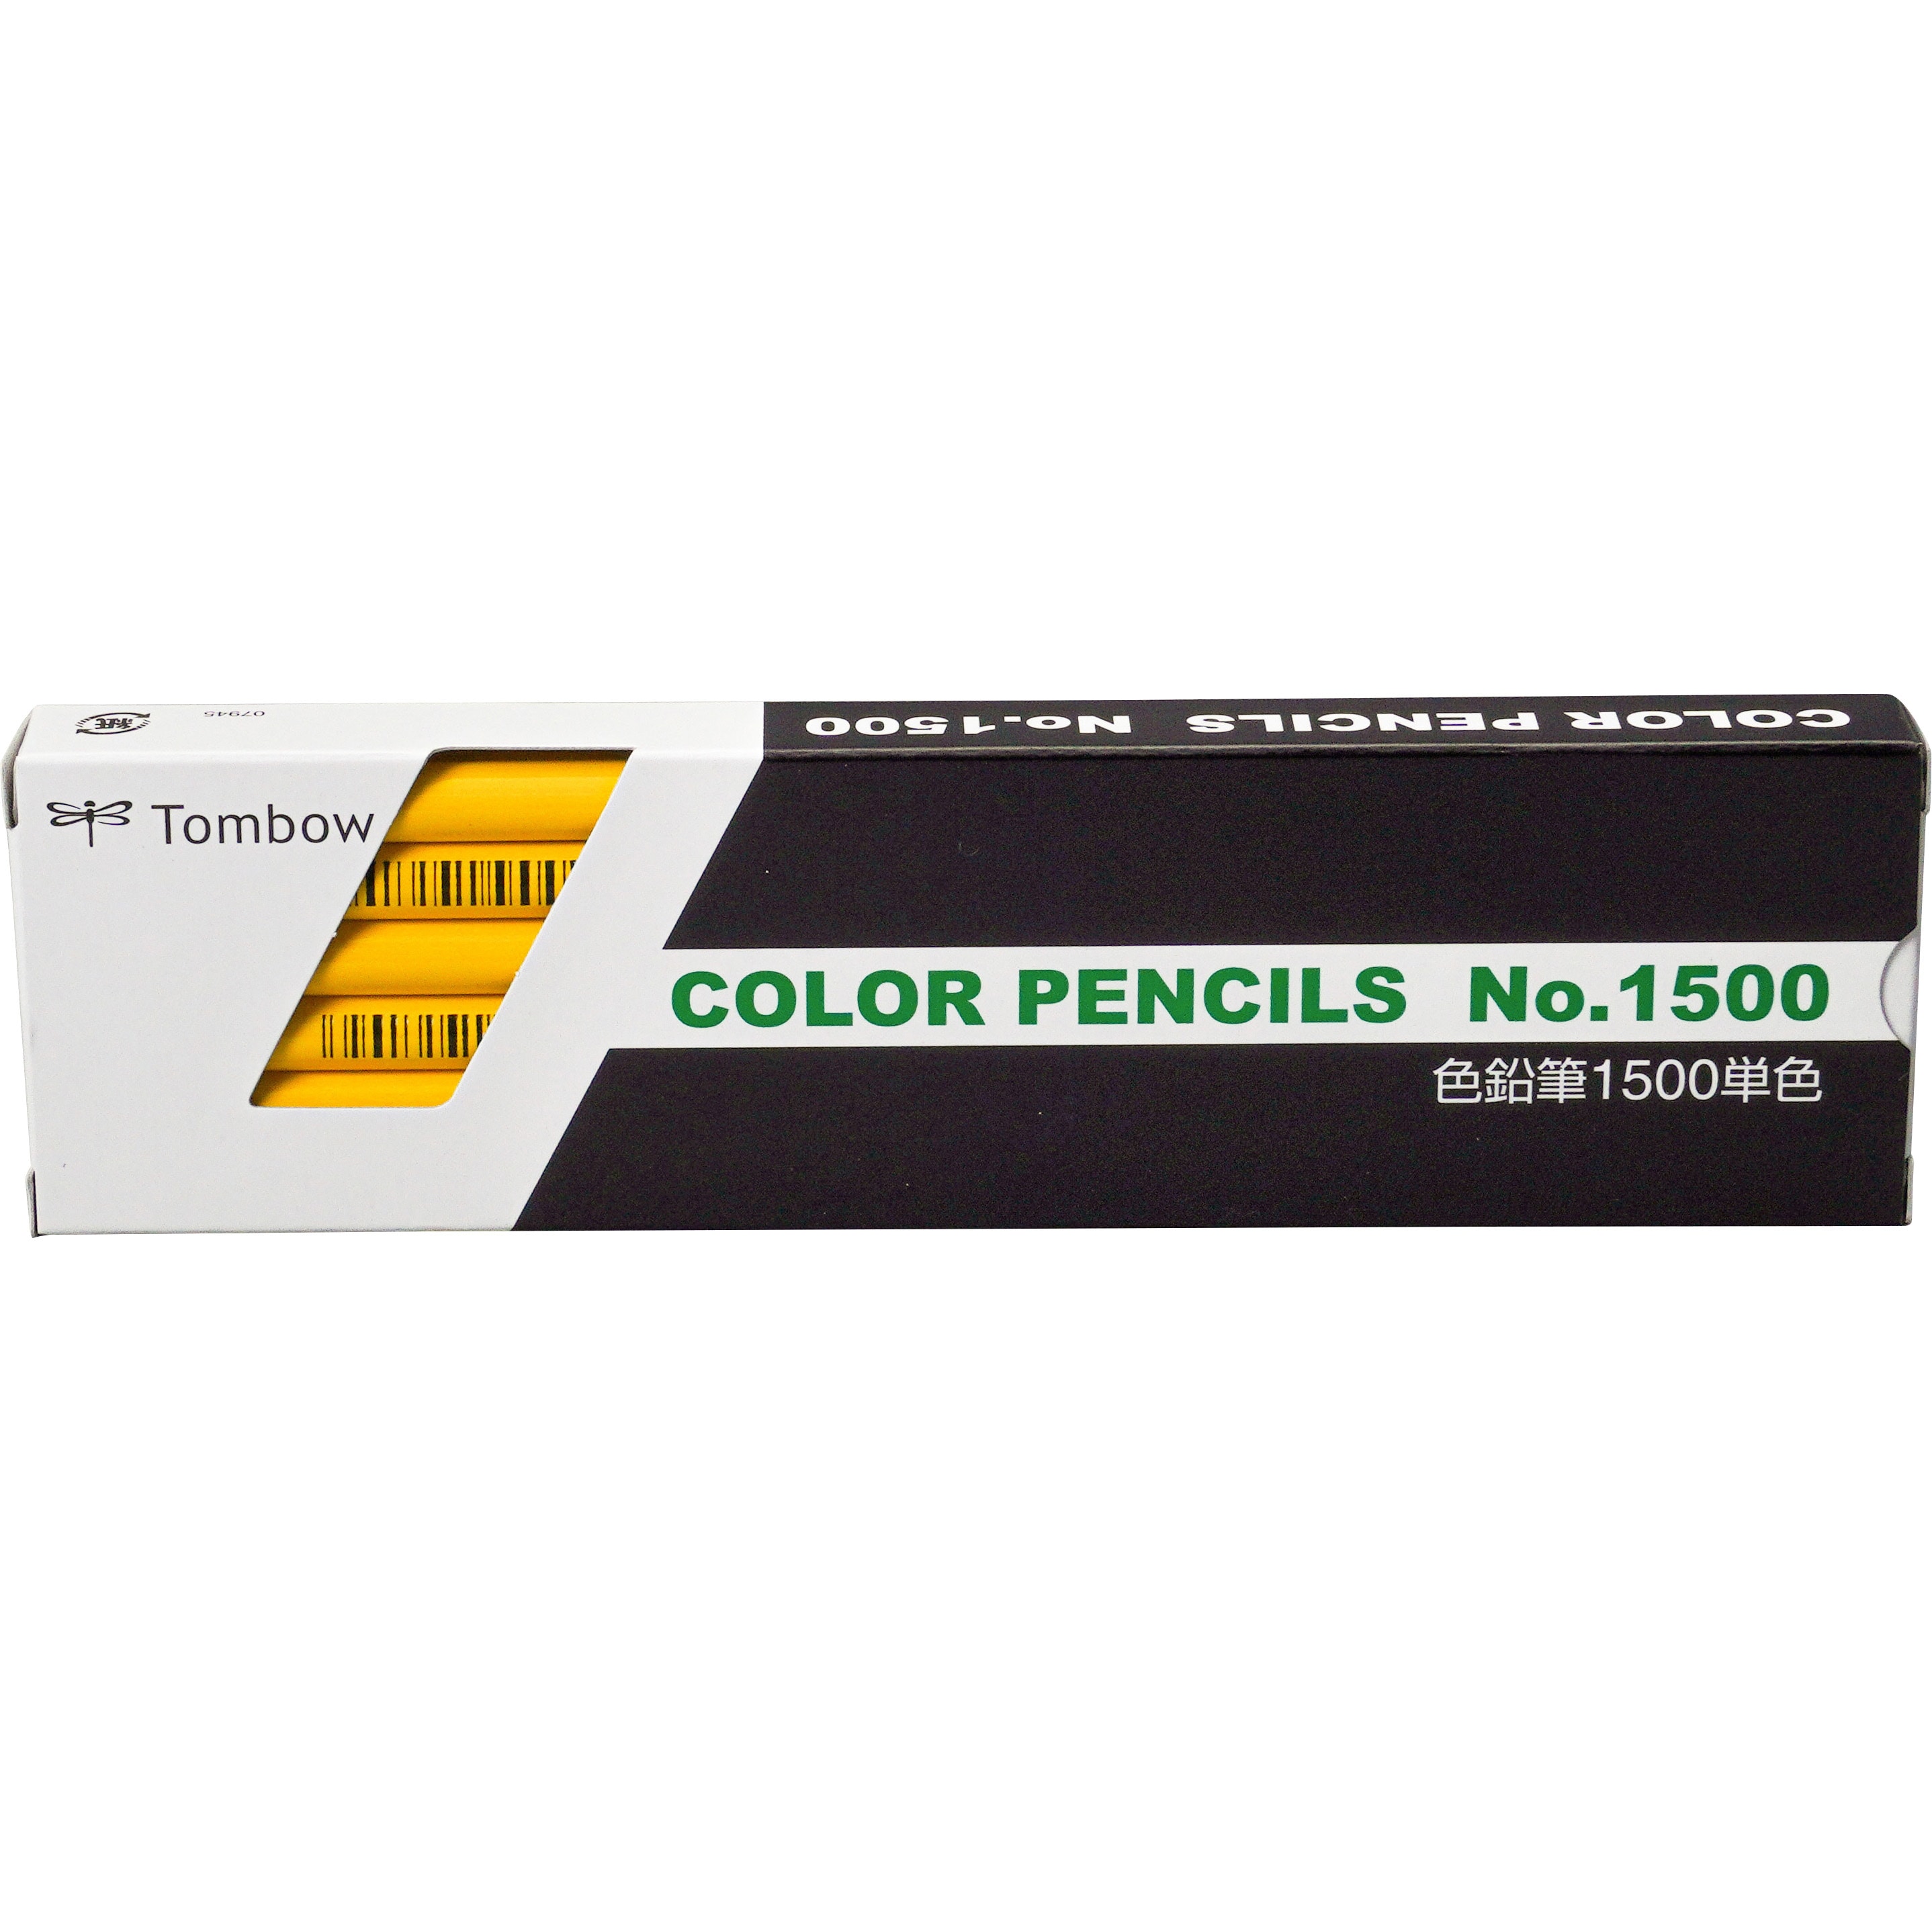 トンボ鉛筆 色鉛筆 1500 単色 焦茶色 150032J バラ売り 1本 こげちゃいろ